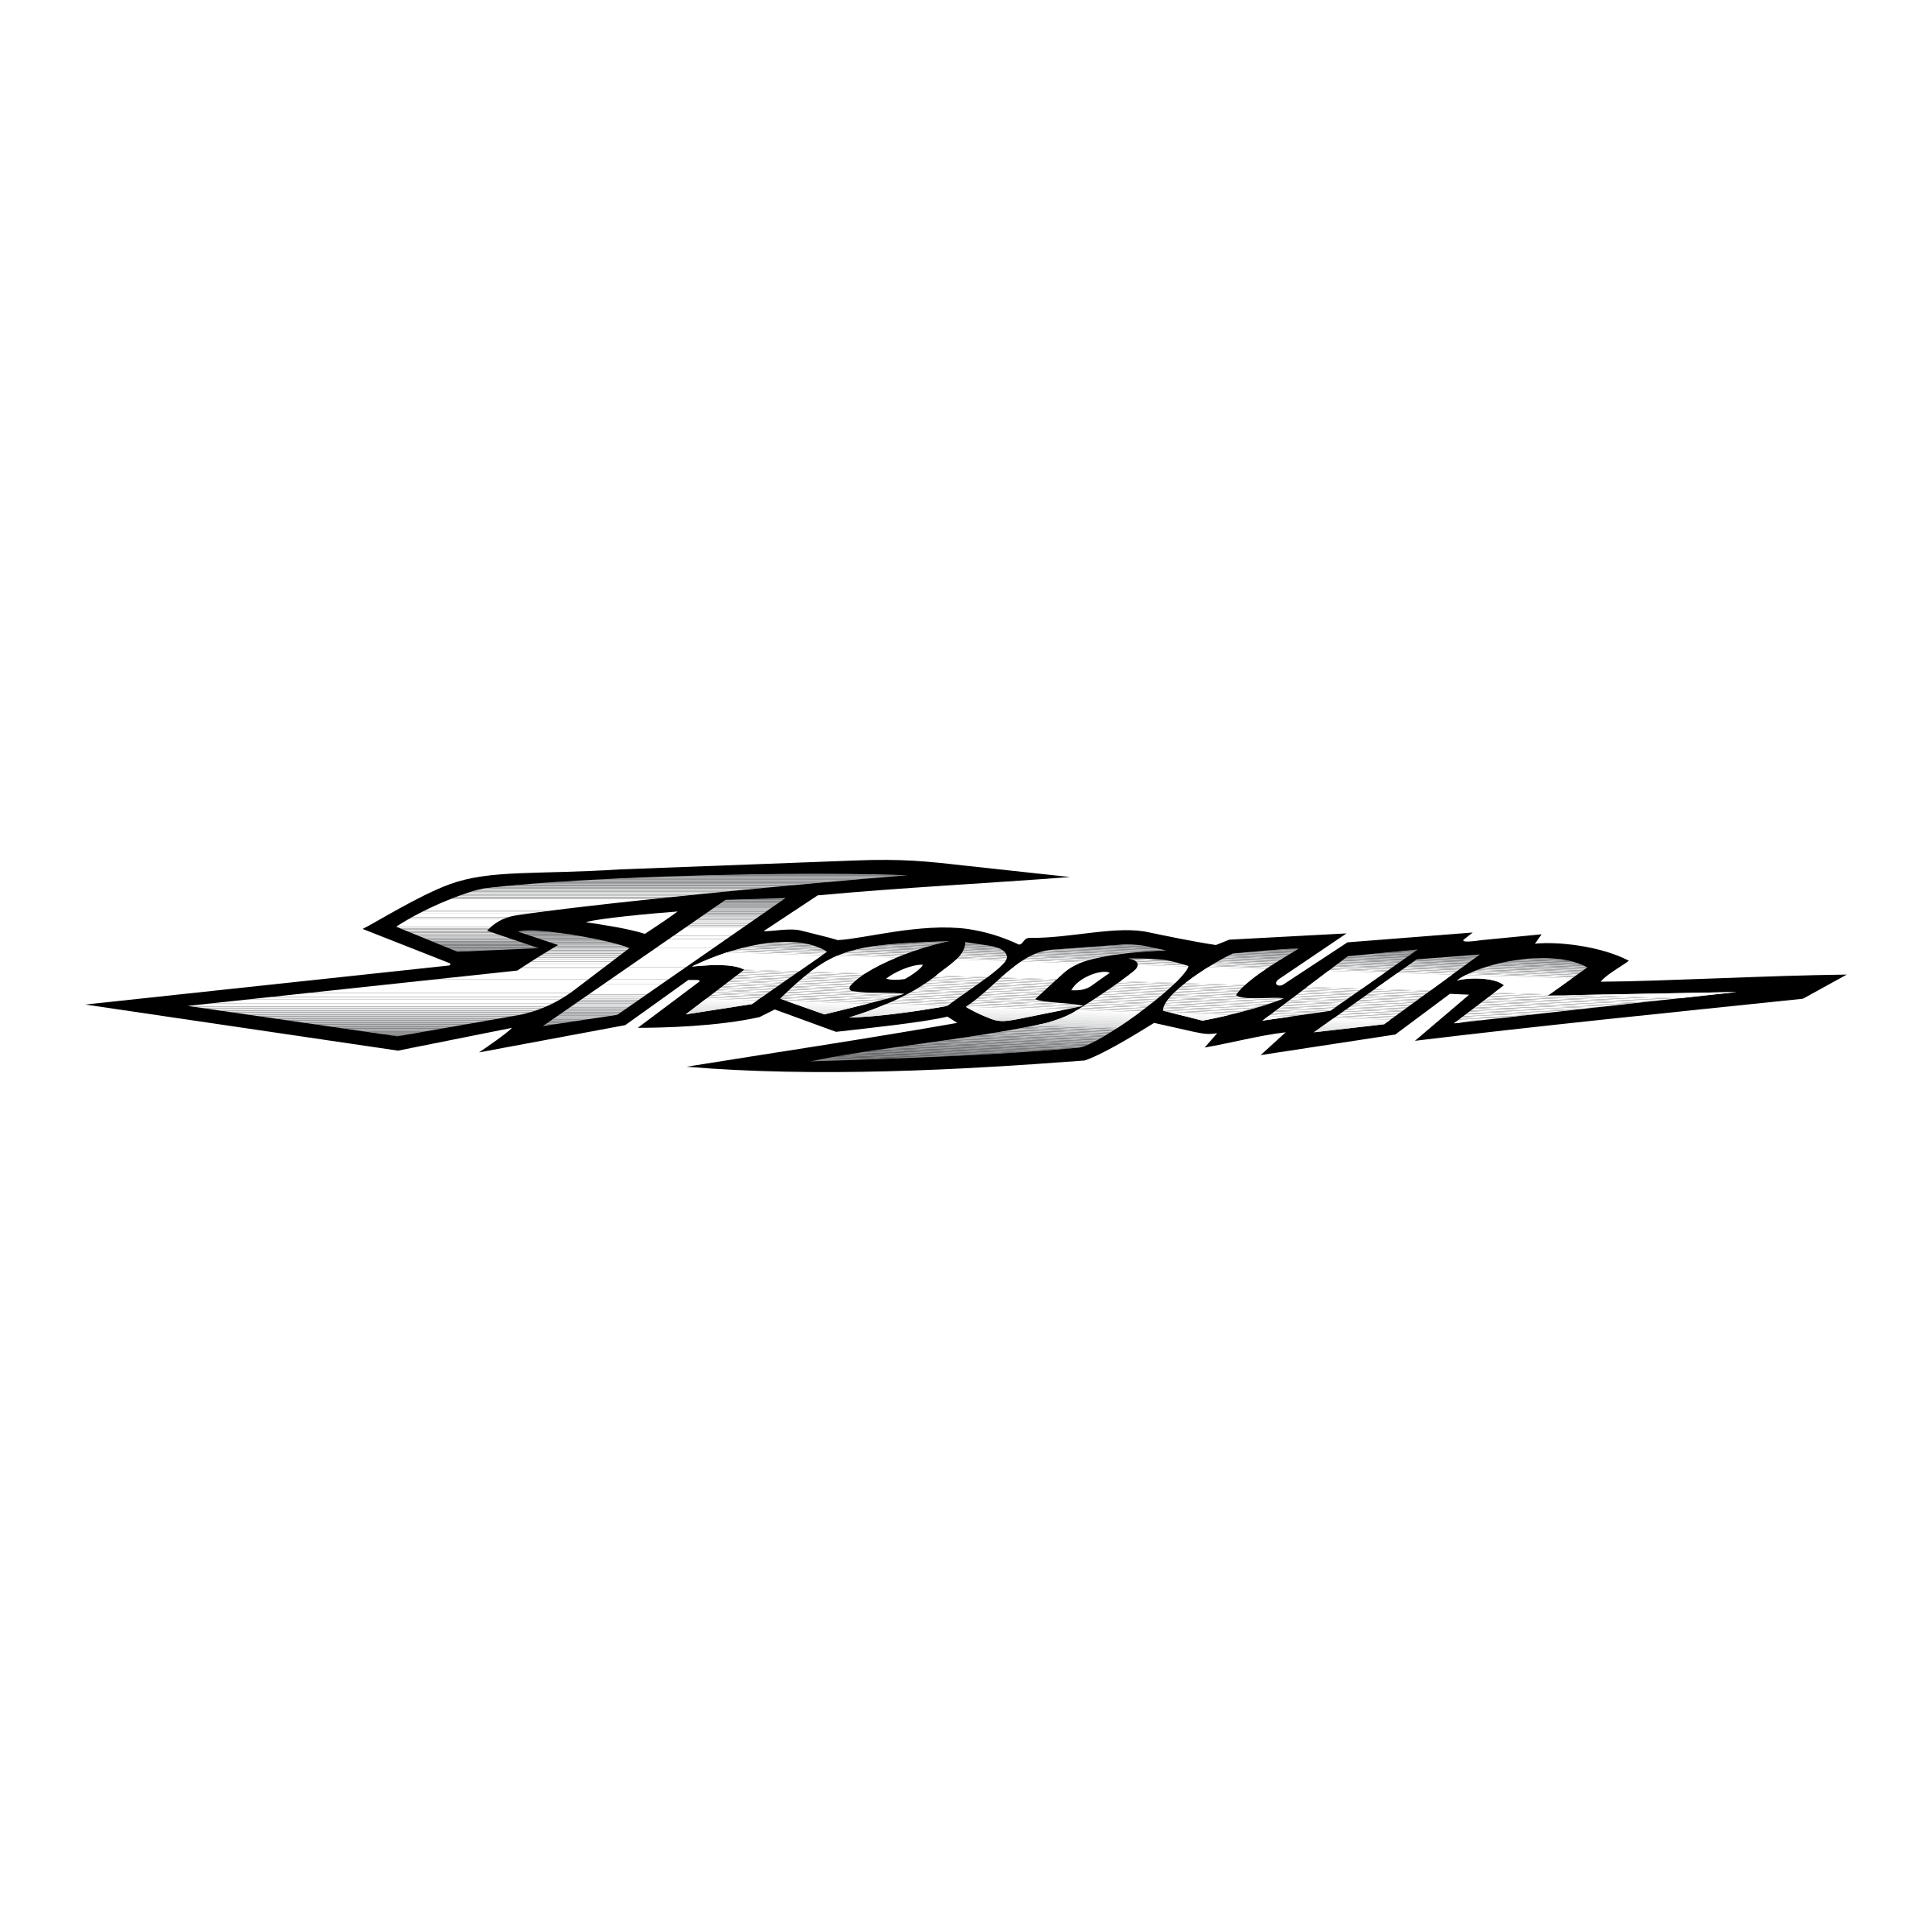 Shogun Logo - Shogun Logo PNG Transparent & SVG Vector